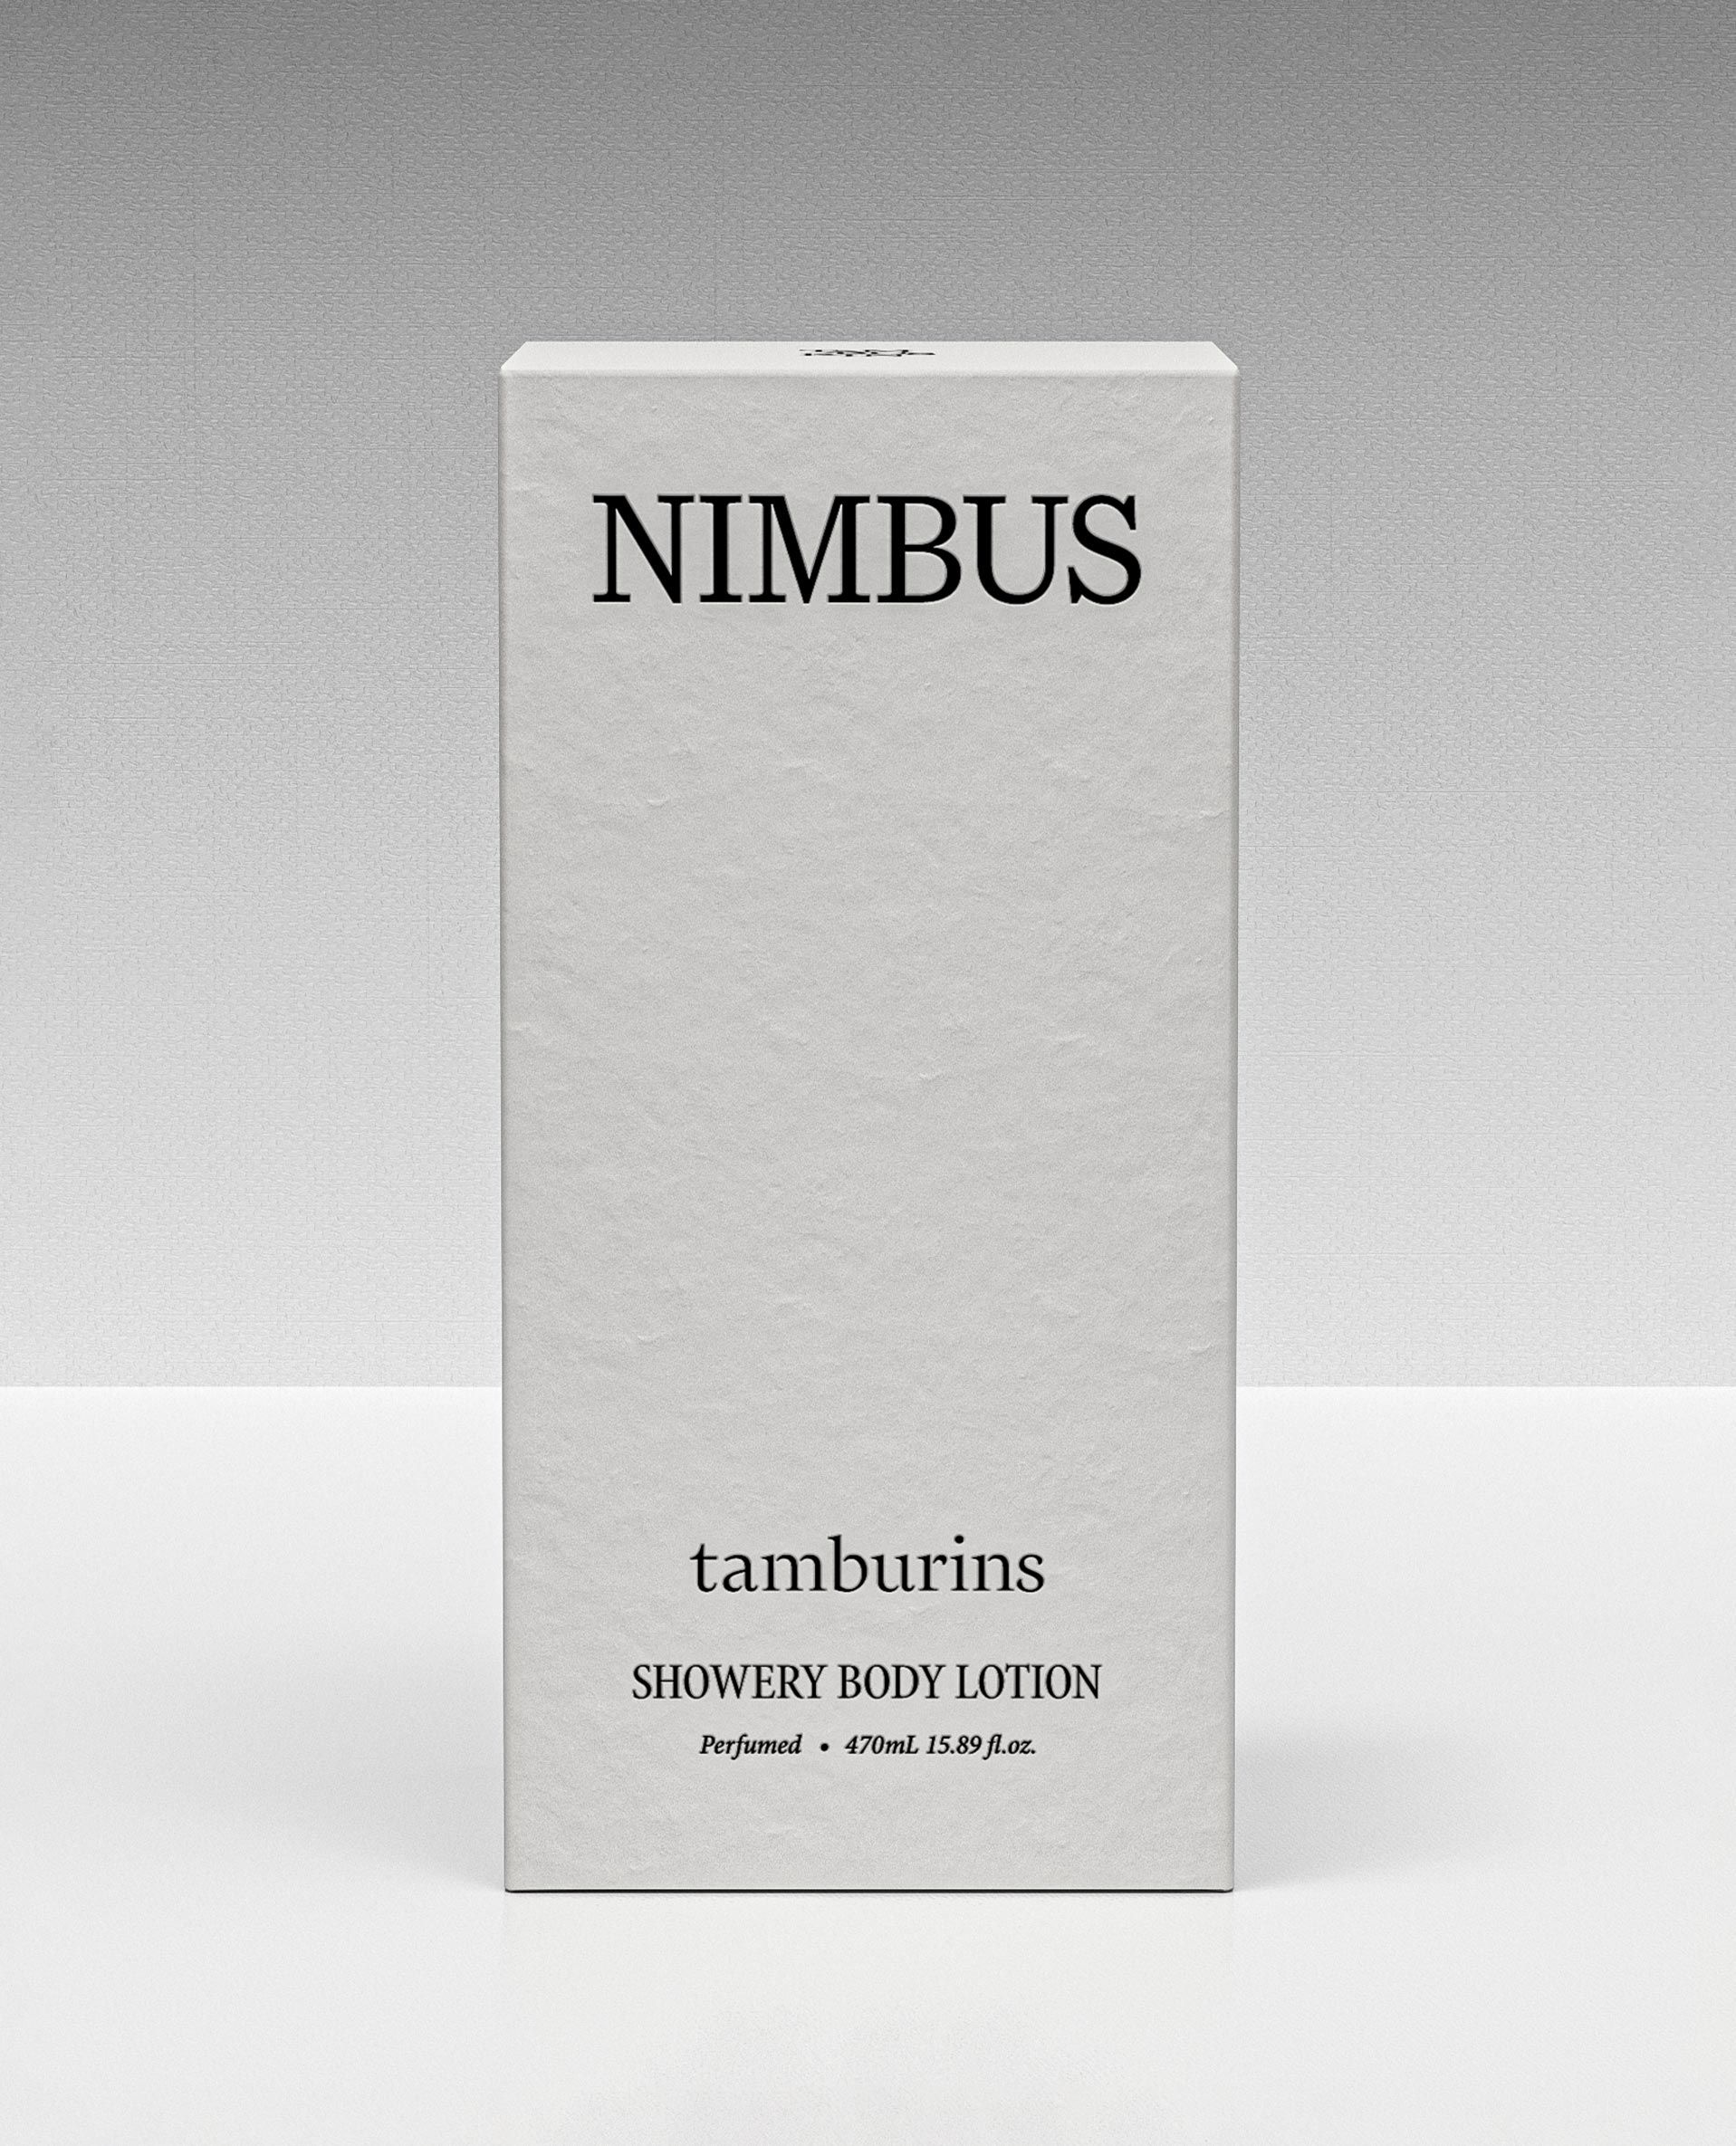 TAMBURINS SHOWERY BODY LOTION  NIMBUS - 470mL | TAMBURINS / SHOWRY WASH&LOTION